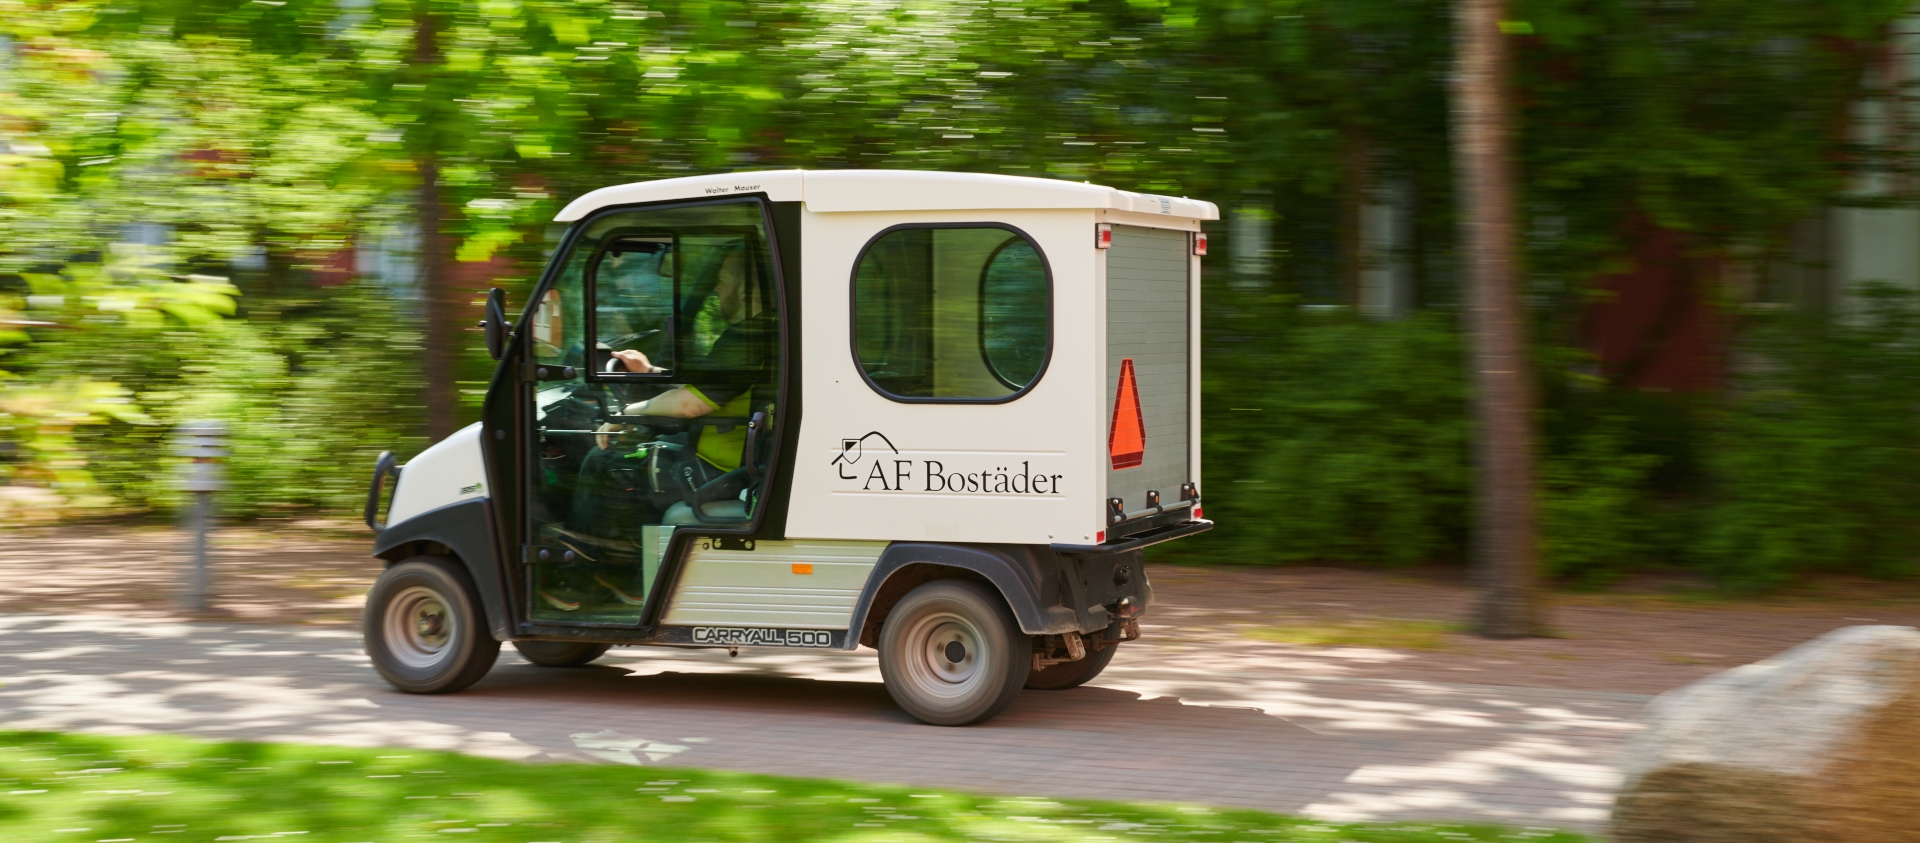 En av AF Bostäders små elbilar kör förbi på en mindre väg omgivet av grönska